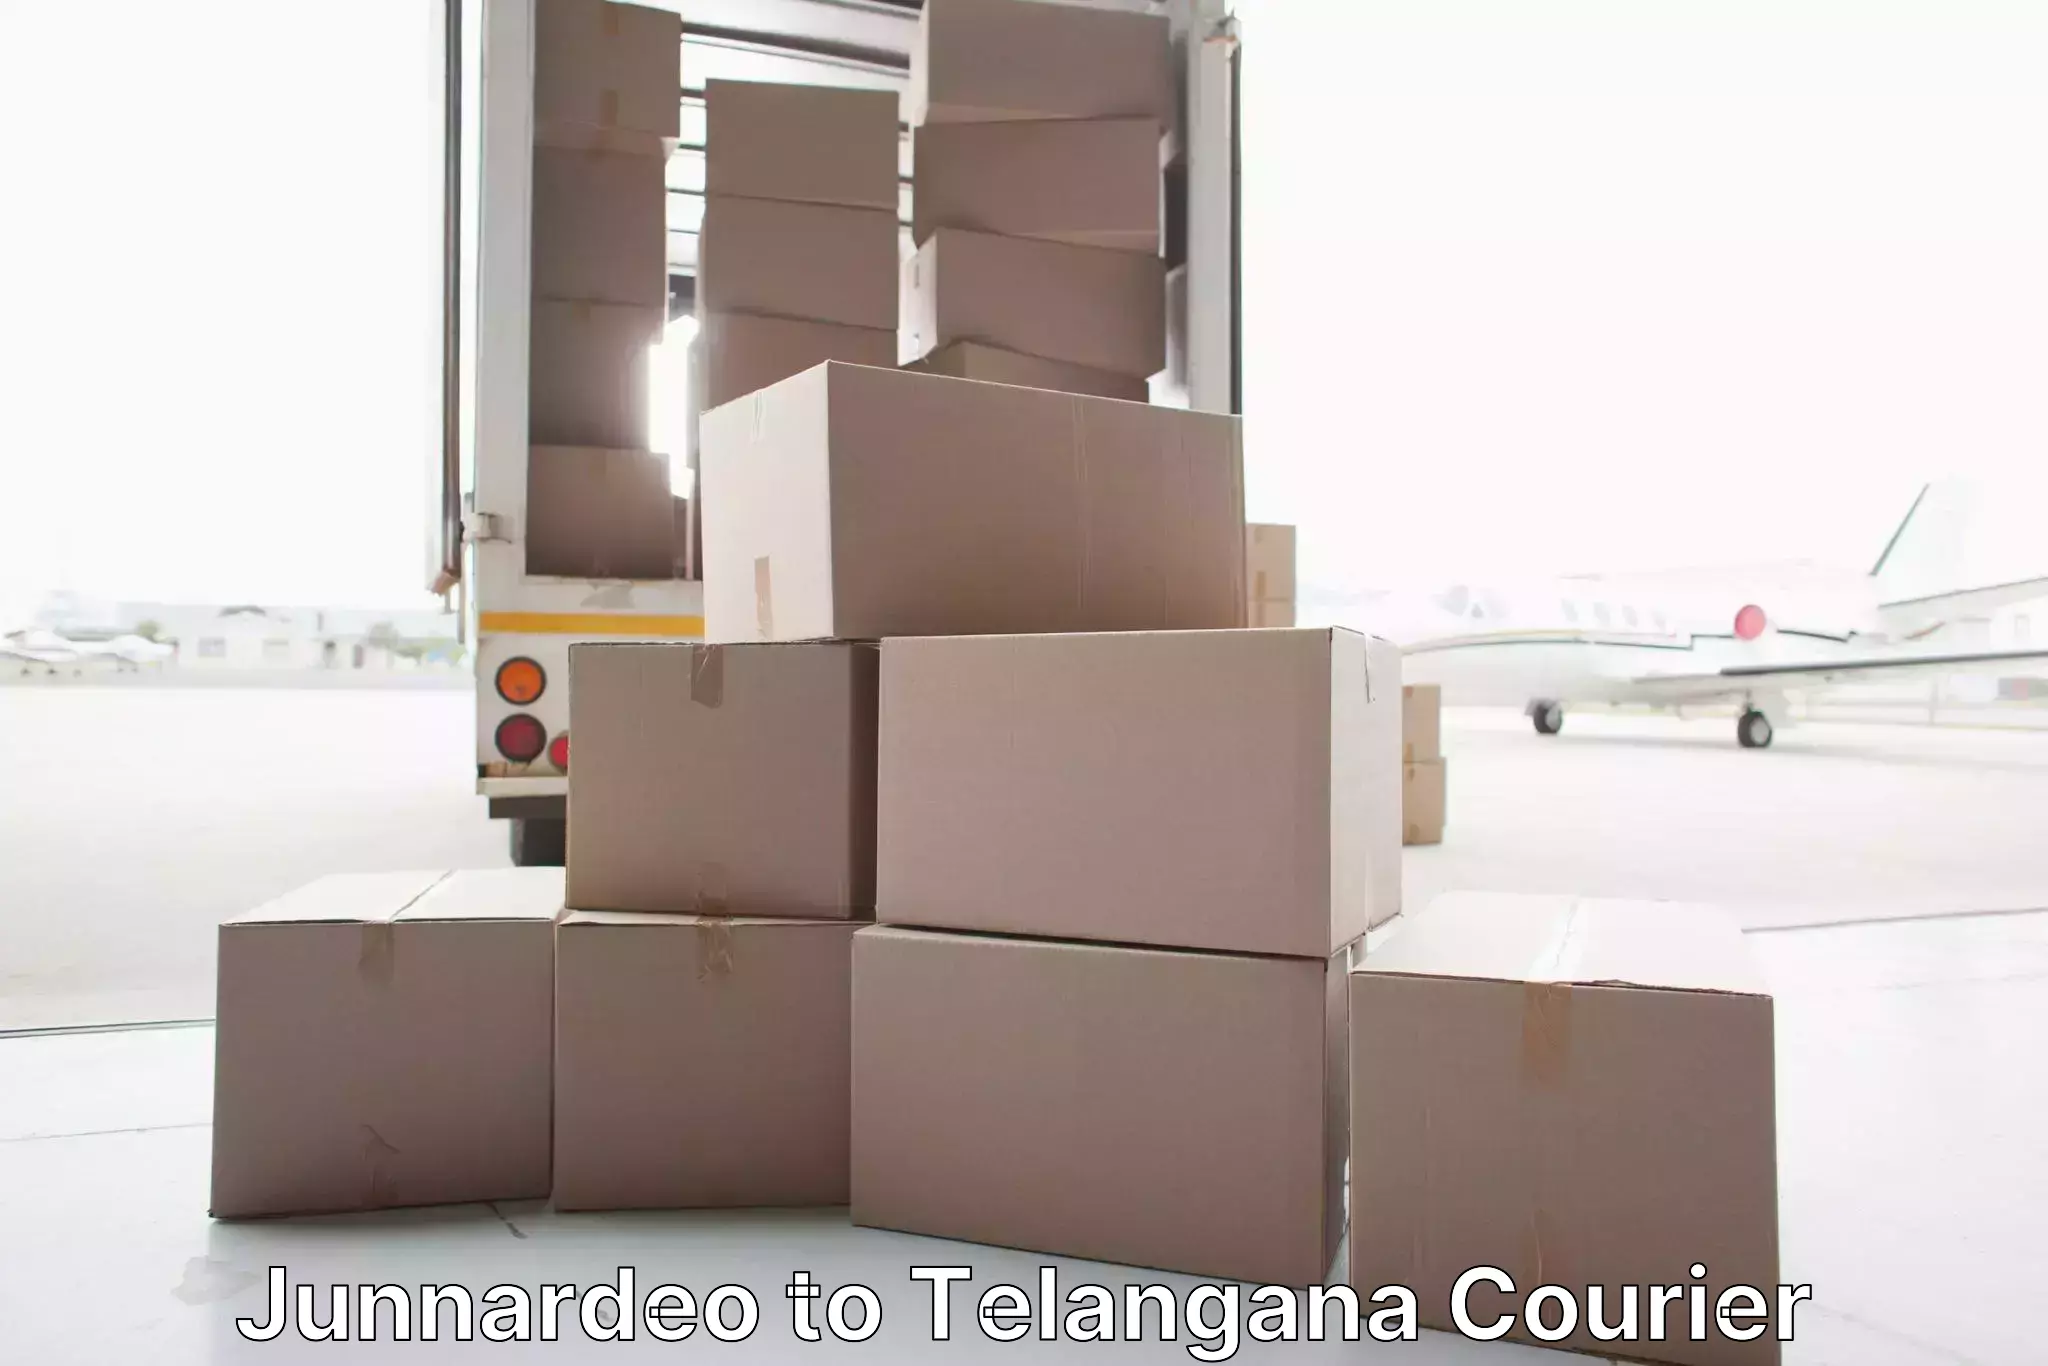 Home goods moving company Junnardeo to Netrang